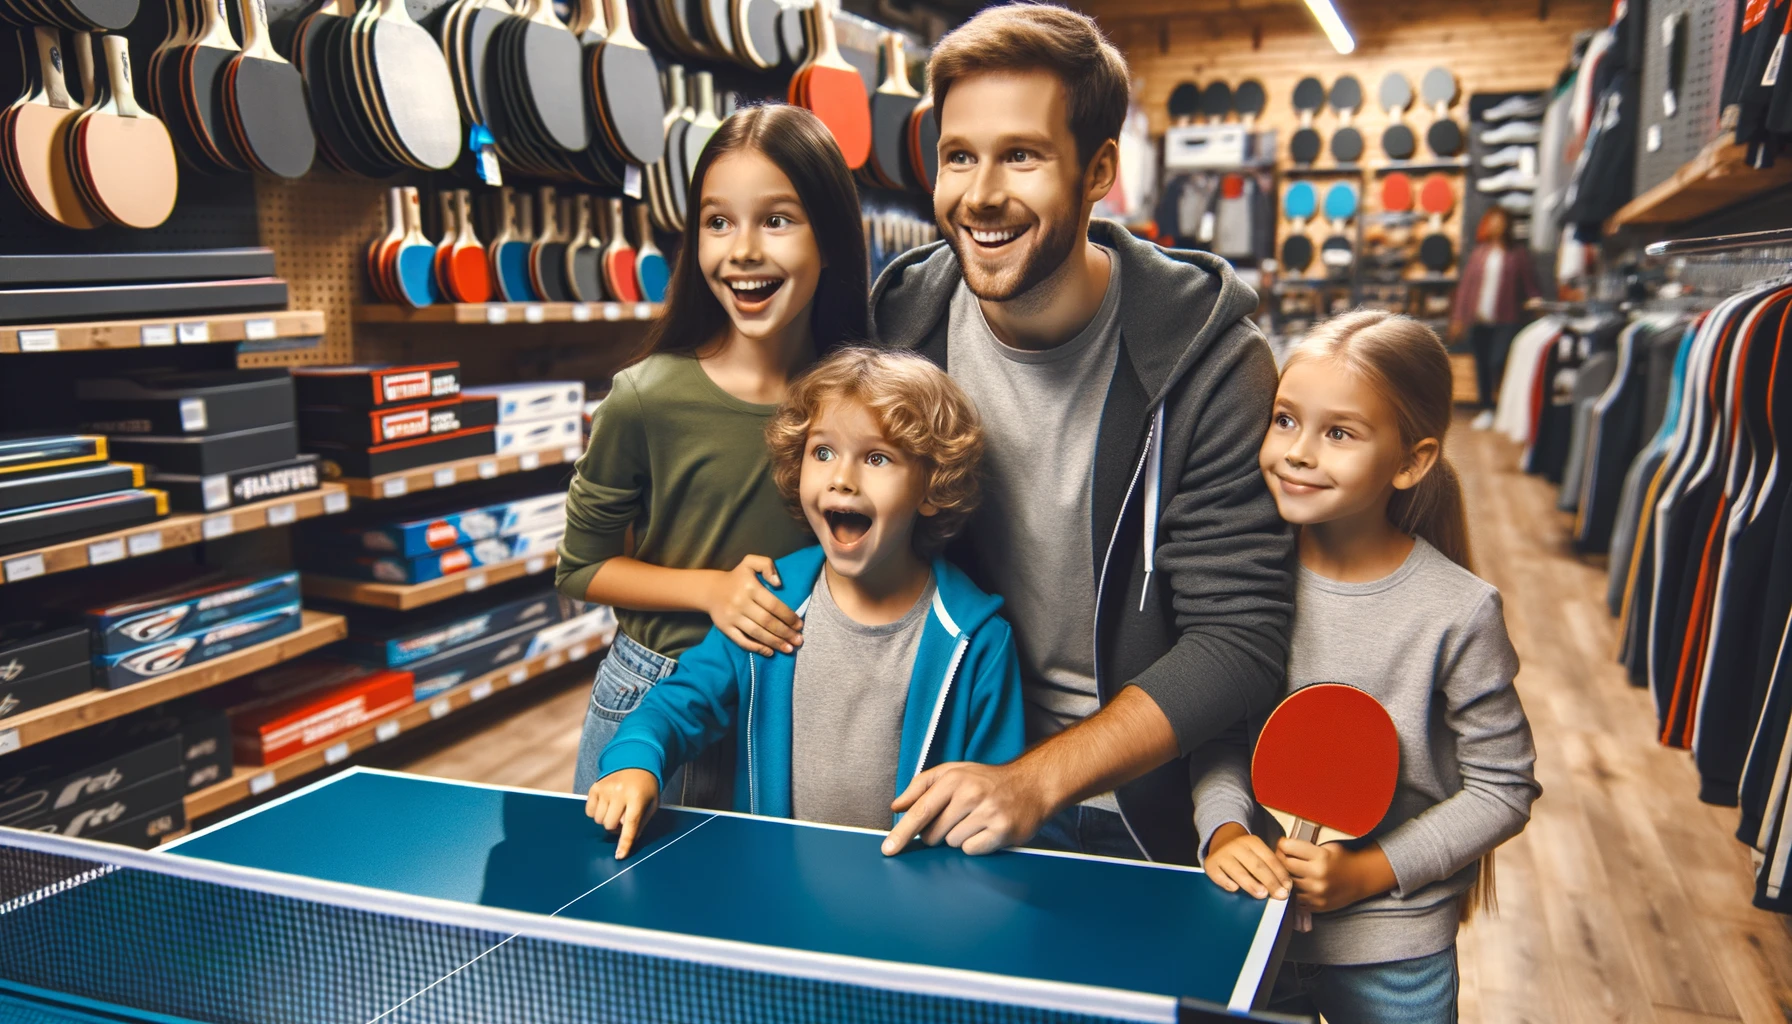 Foto einer Familie in einem Sportgeschäft, wobei die Kinder aufgeregt auf eine Tischtennisplatte zeigen, die sie haben möchten